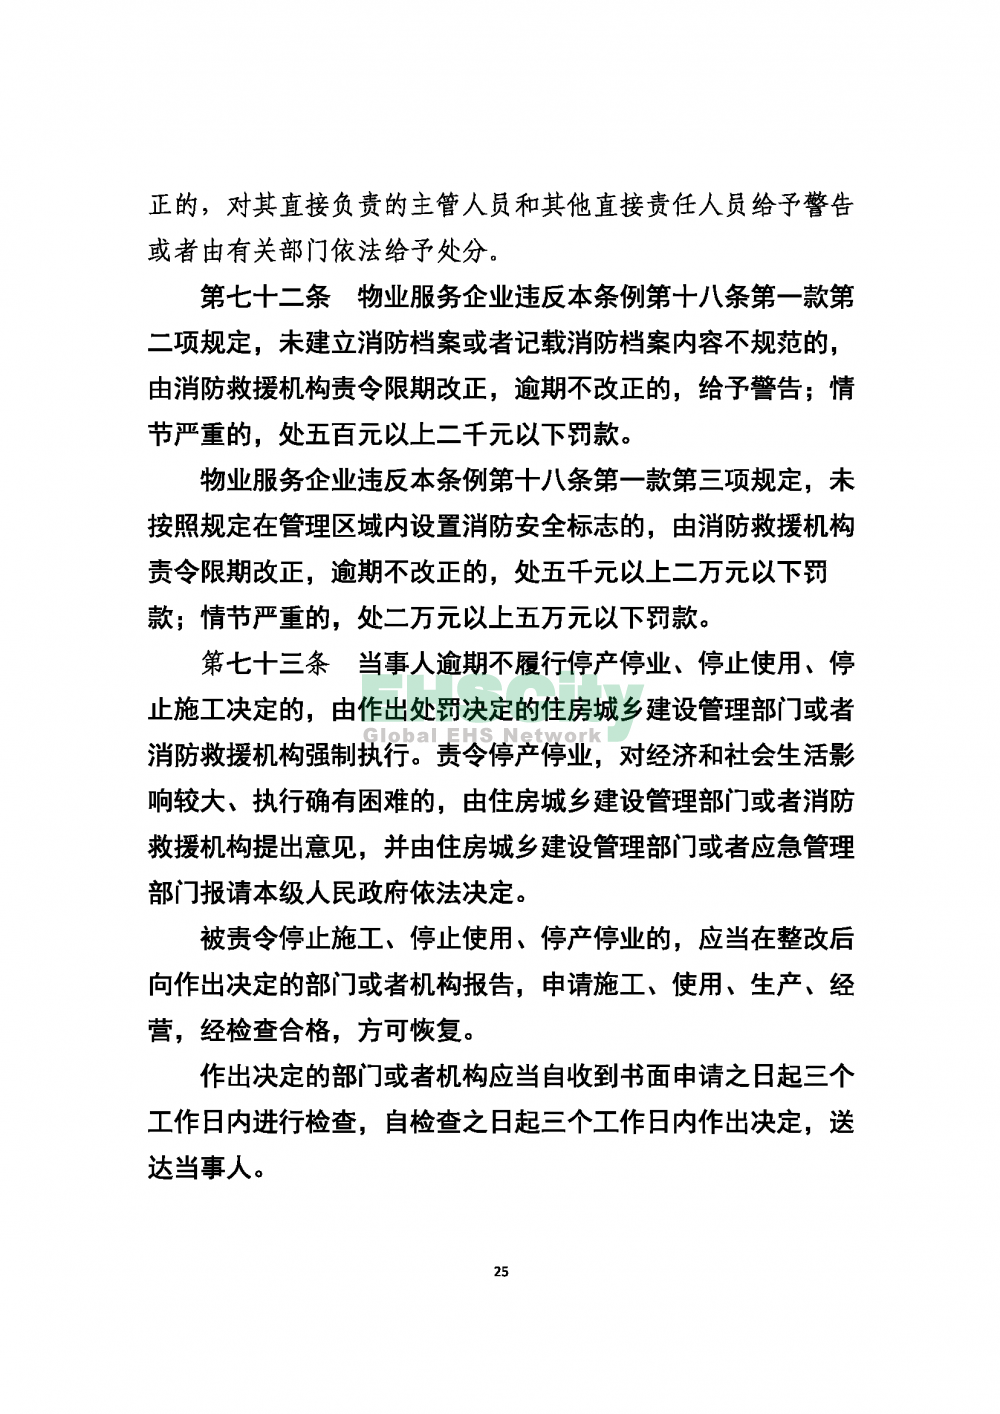 2020版上海消防条例_页面_25